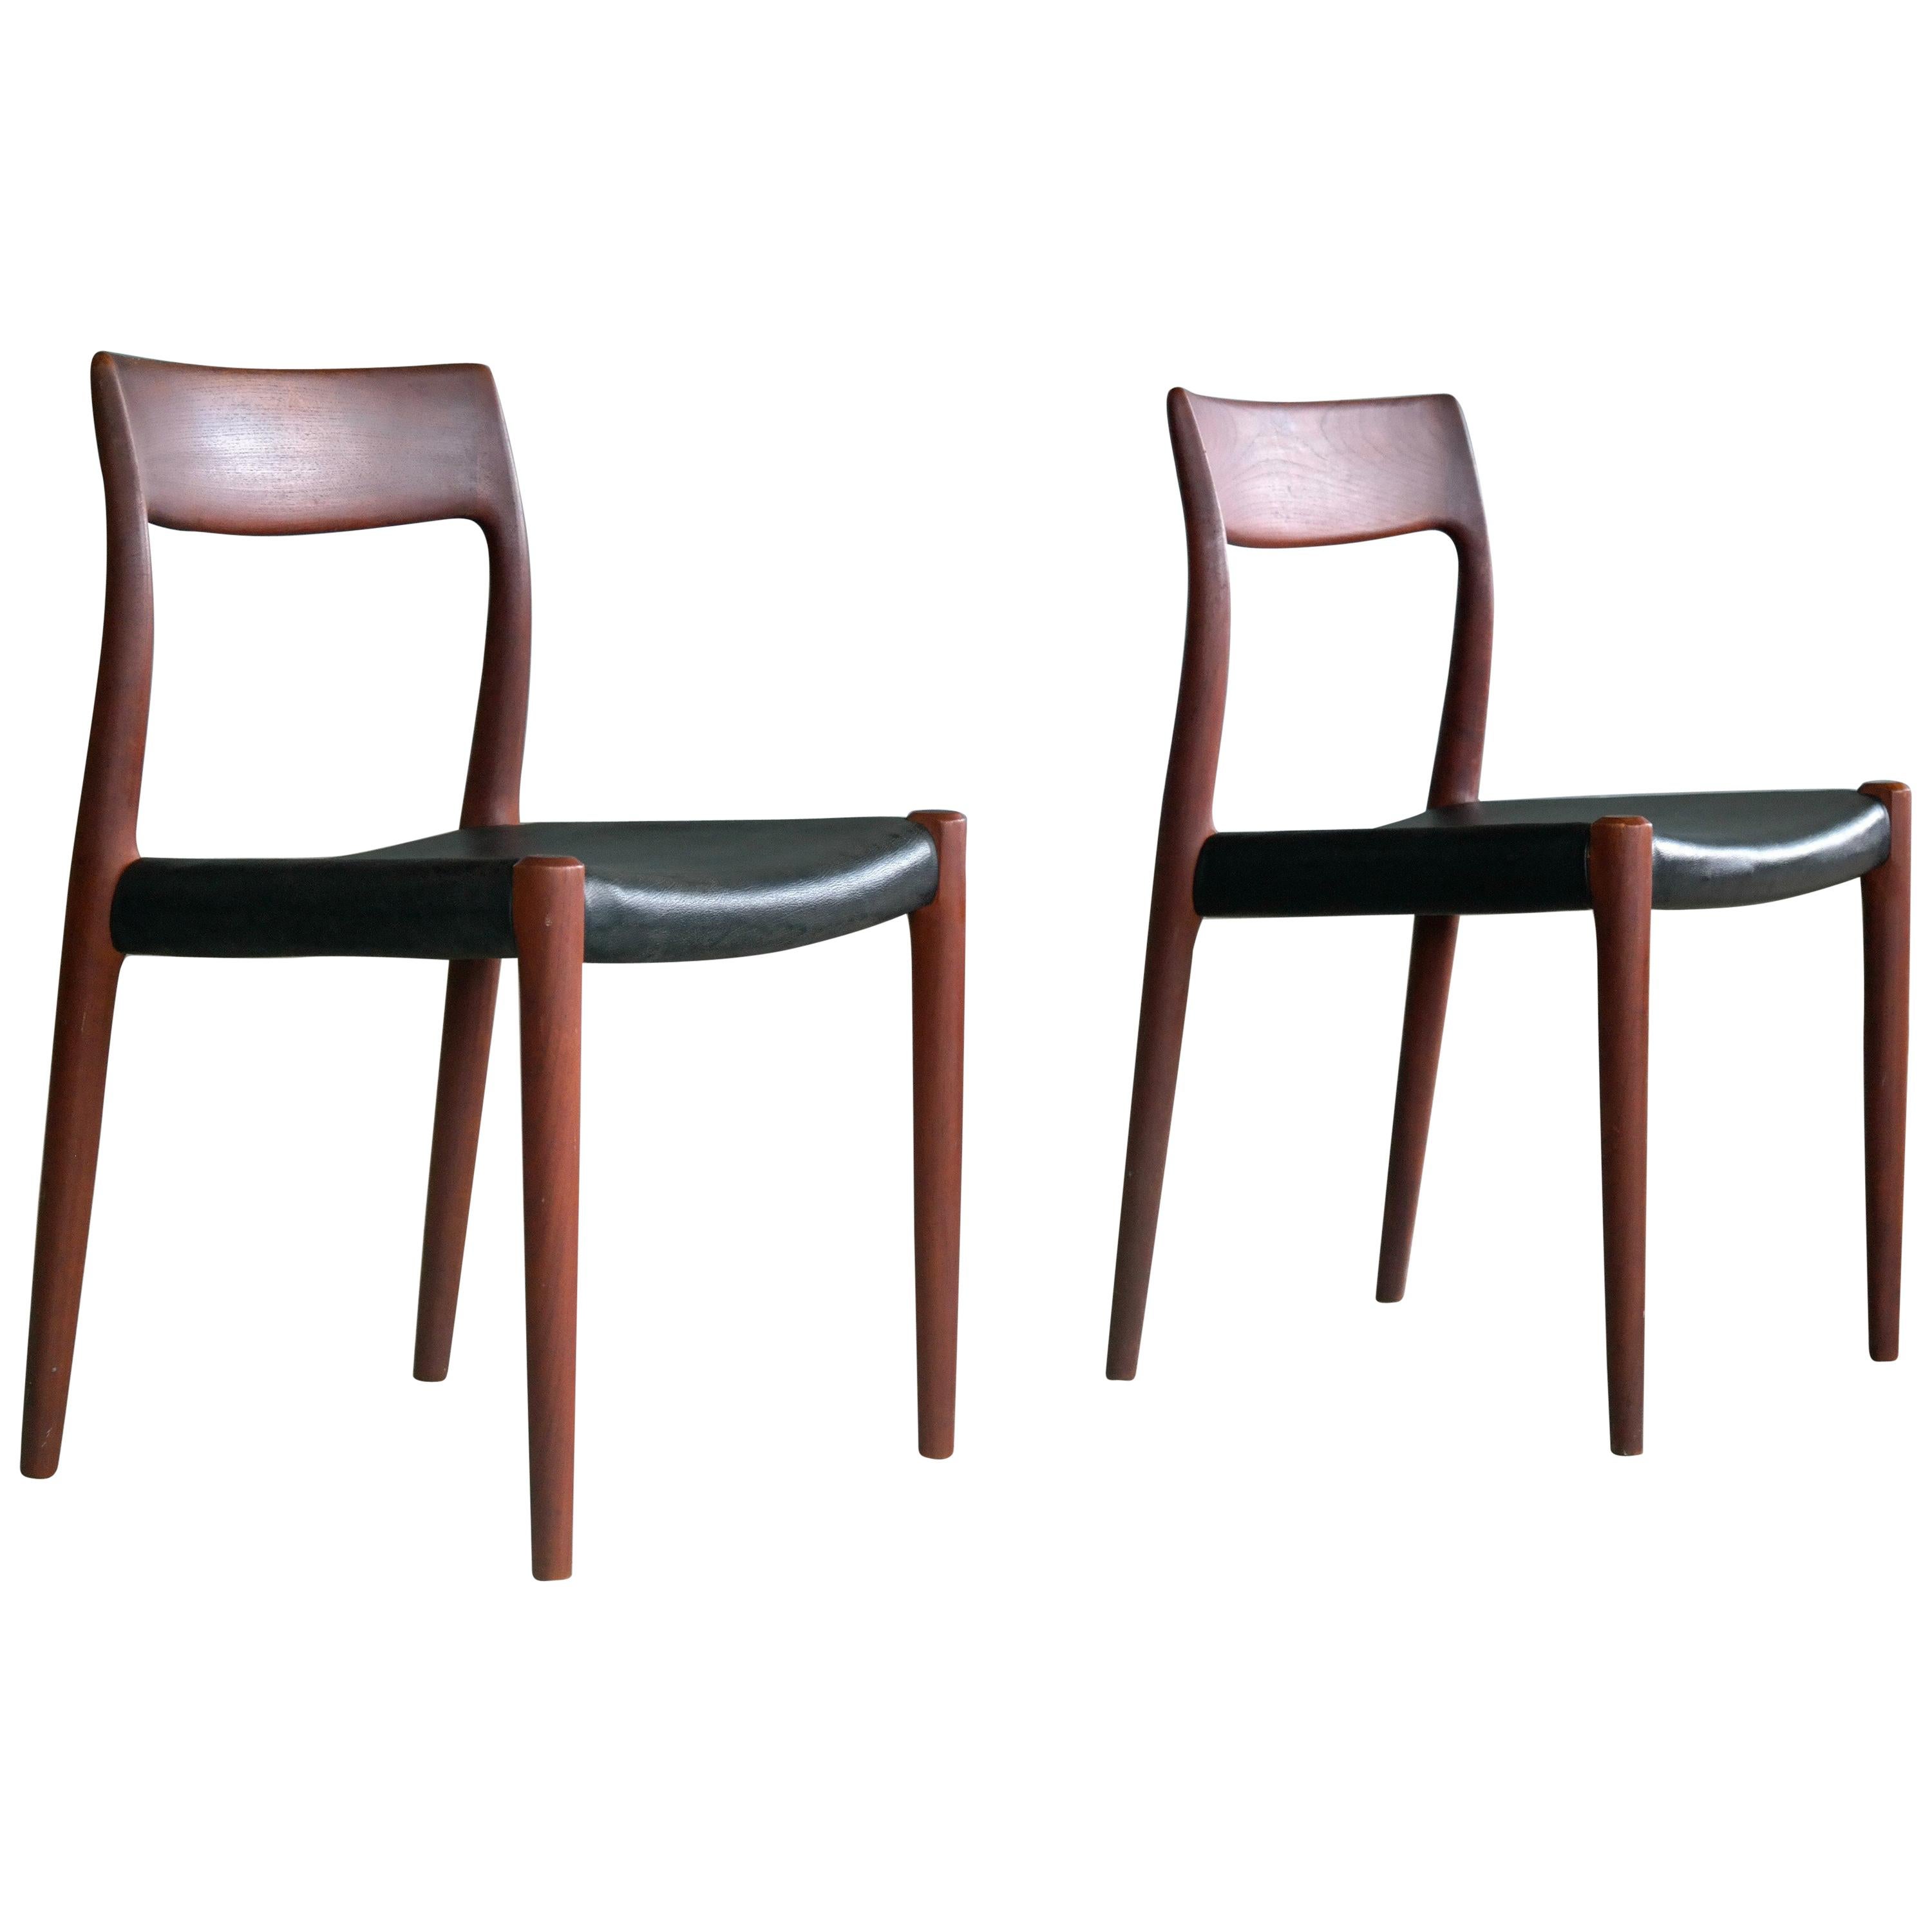 Pair of Model # 77 Teak Dining or Side Chairs by N.O. Møller, Denmark, 1959